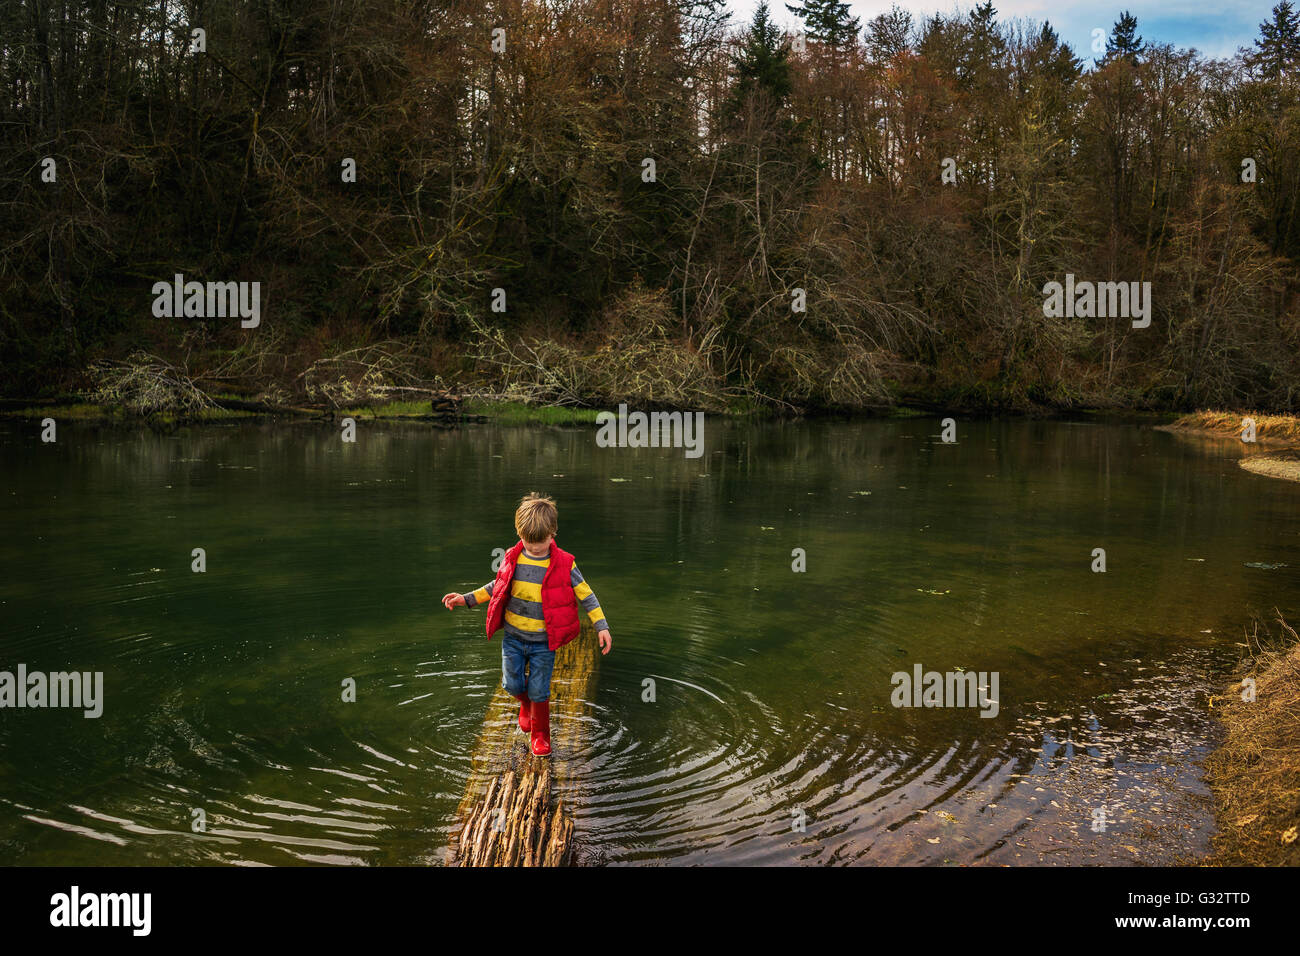 Boy walking on log in lake Stock Photo